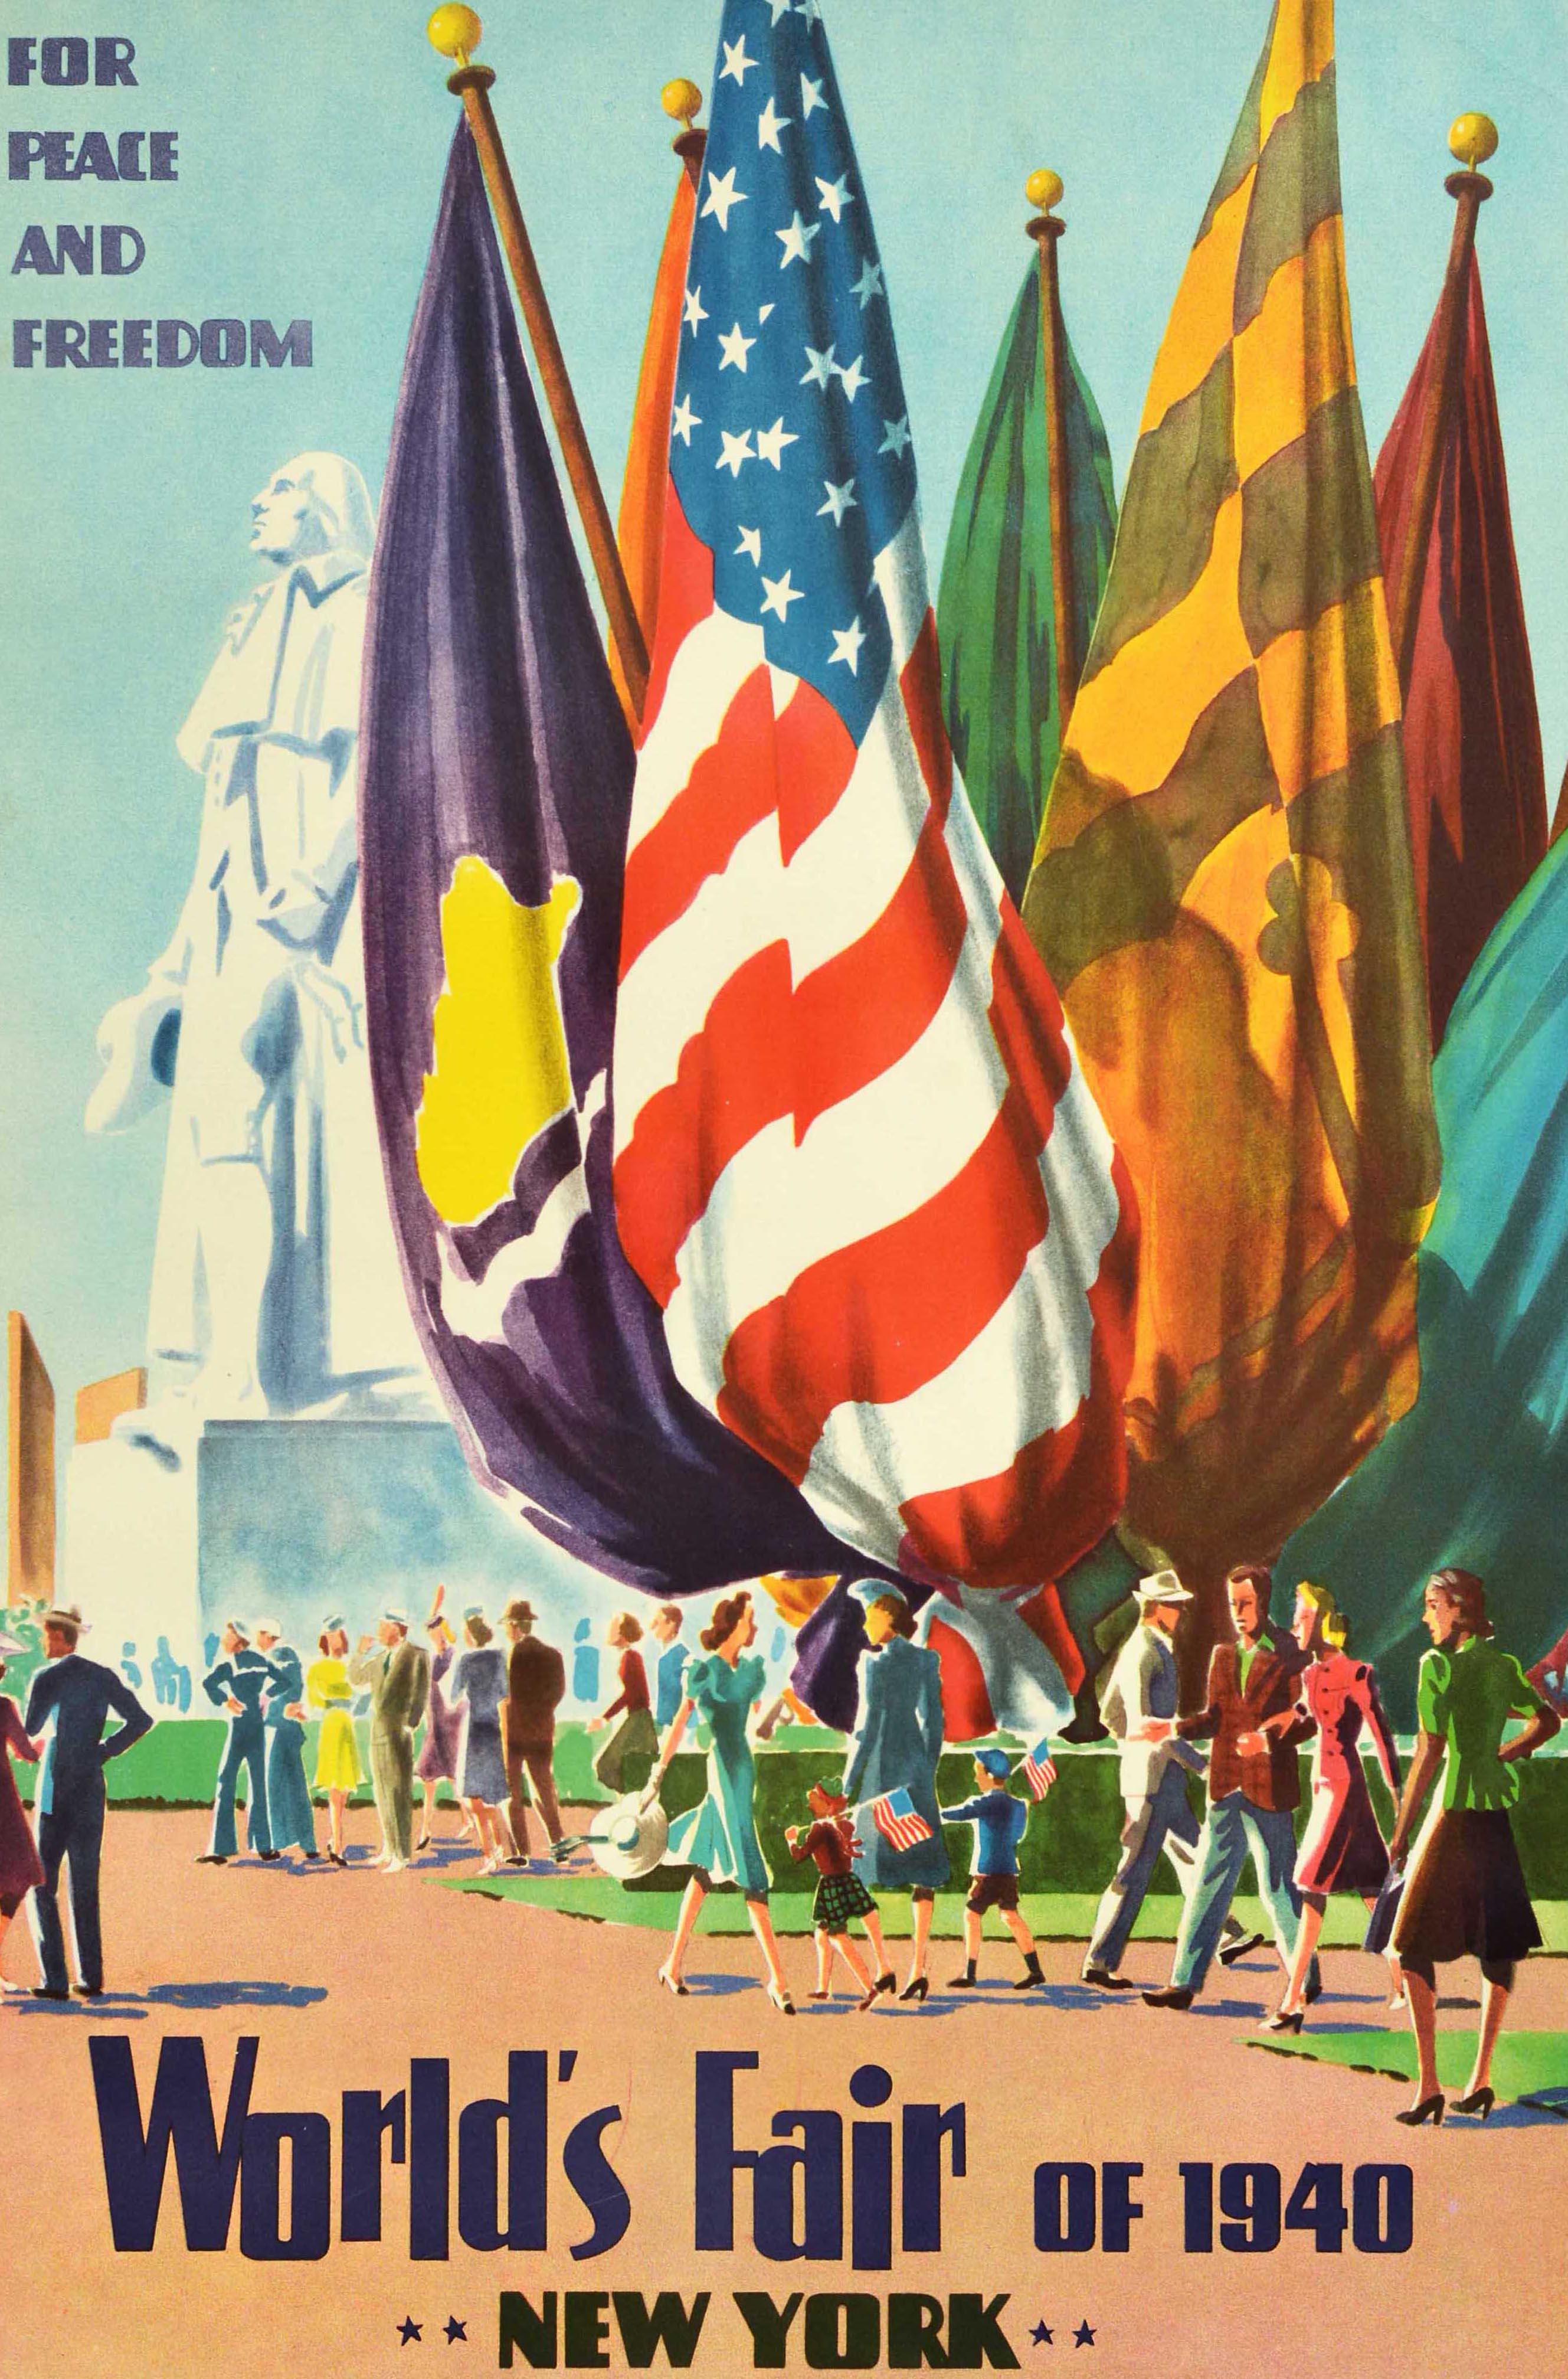 Original-Reisewerbeplakat - World's Fair of 1940 New York For Peace and Freedom - mit einer farbenfrohen Illustration von Menschen, die an einer Flaggenausstellung vorbeigehen, mit zwei Kindern, die amerikanische Flaggen halten, und der Statue des